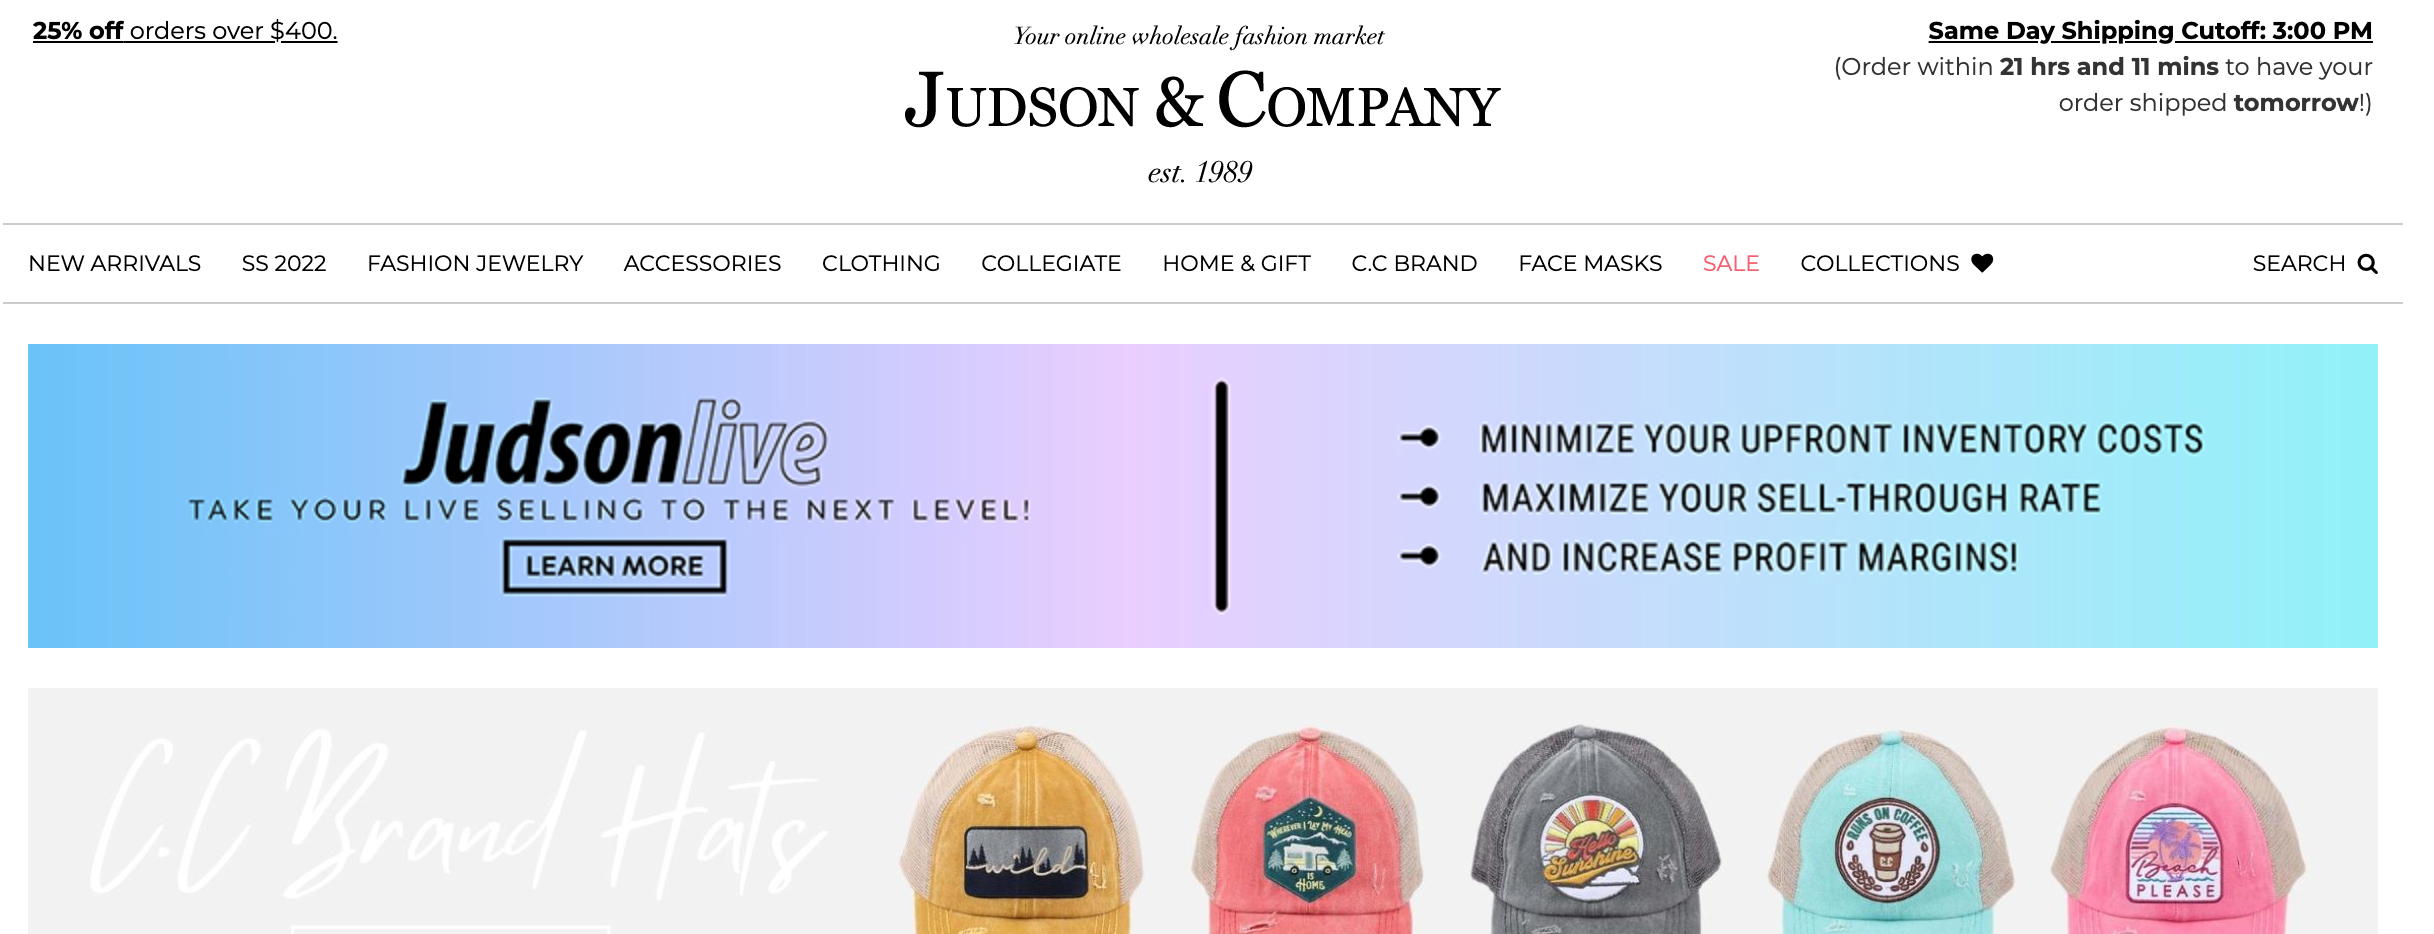 judson boutique wholesale